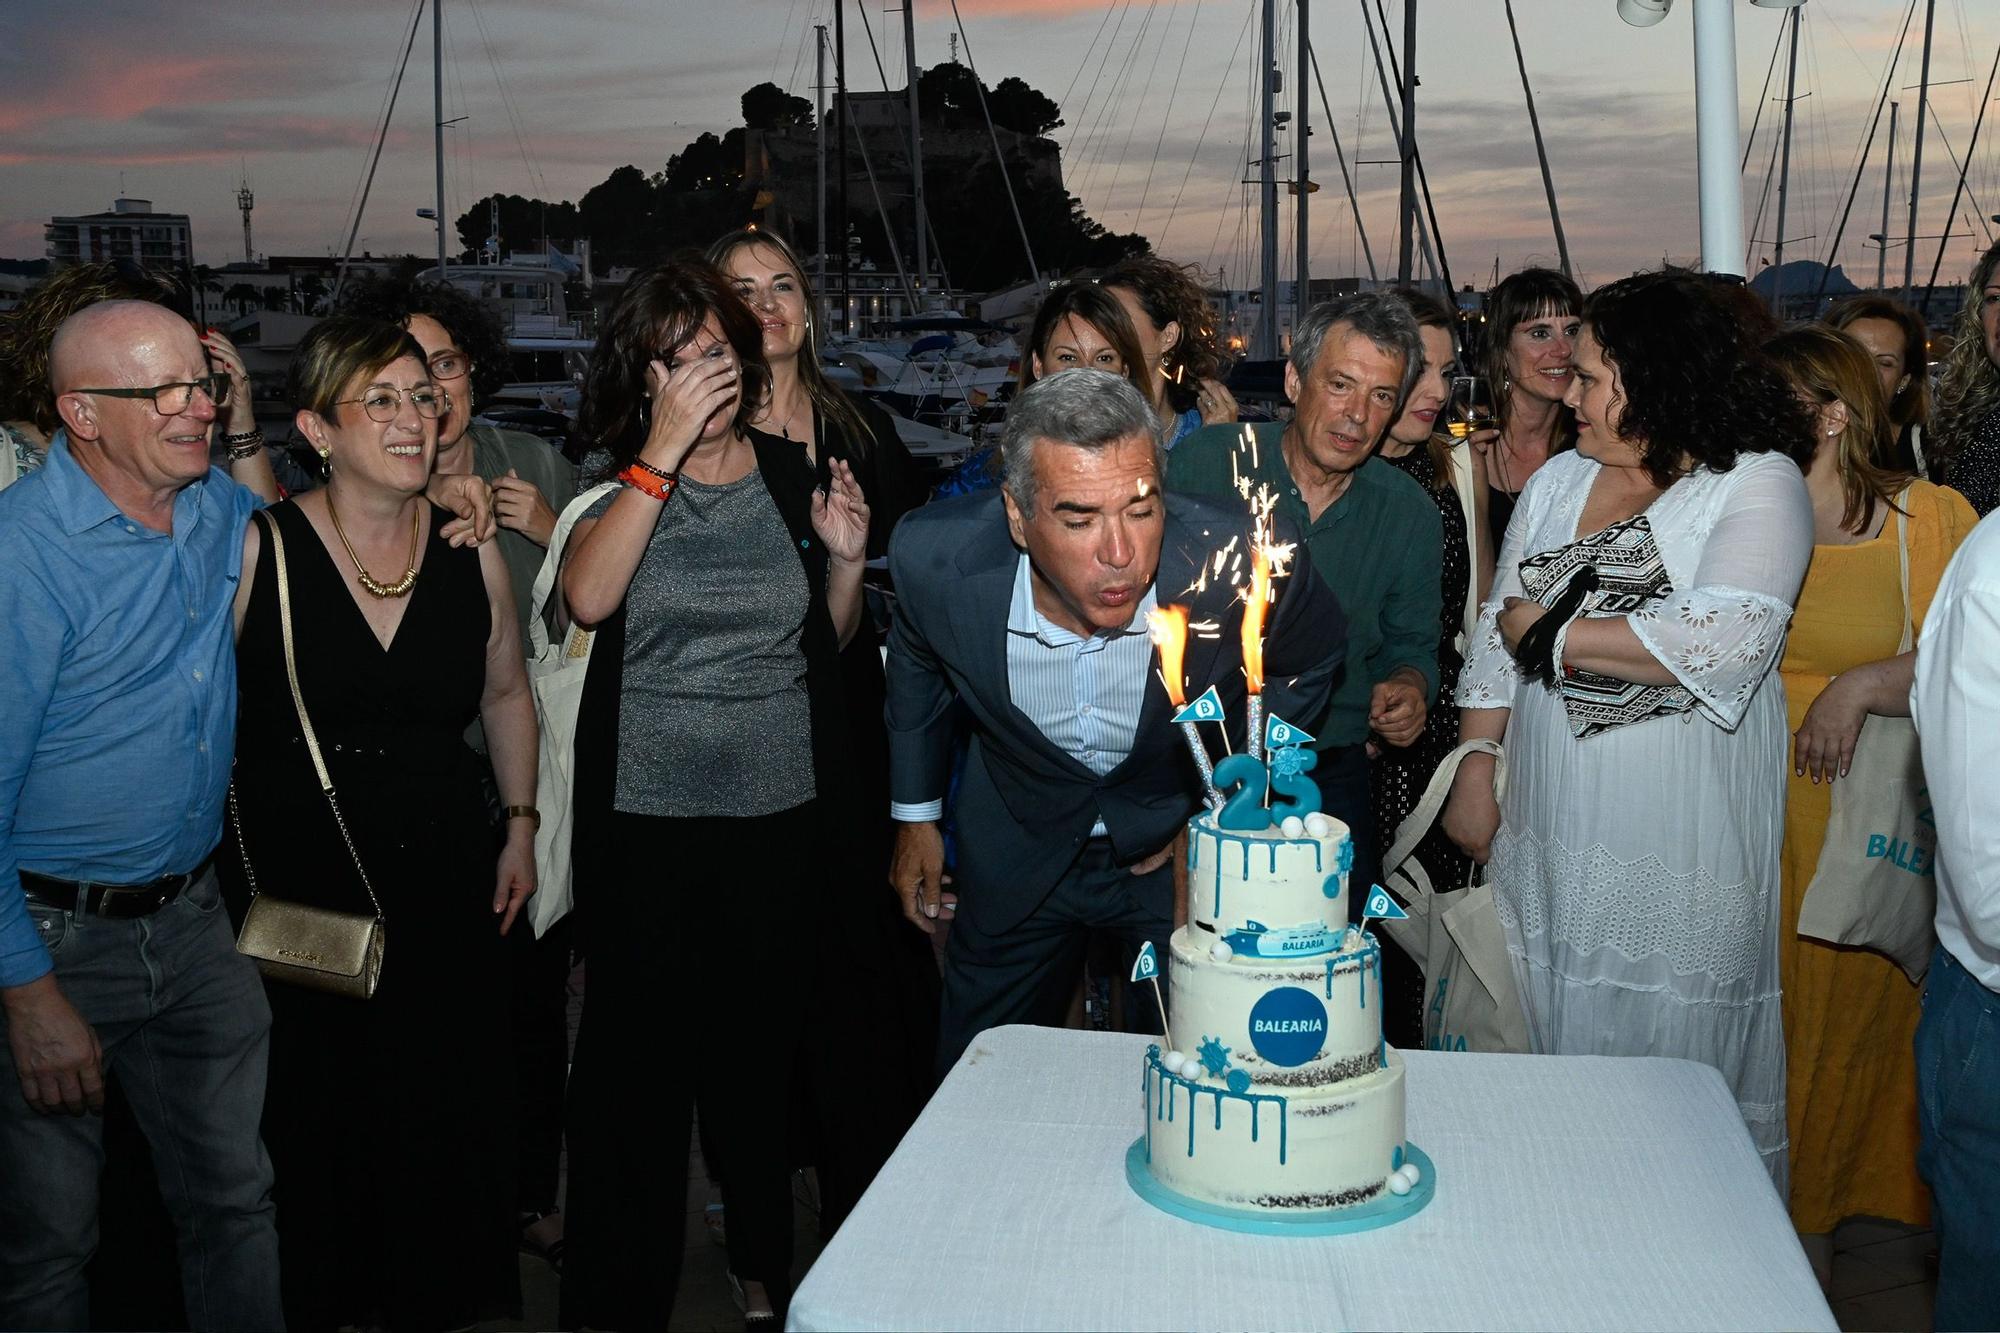 La fiesta popular por los 25 años de Baleària, en imágenes